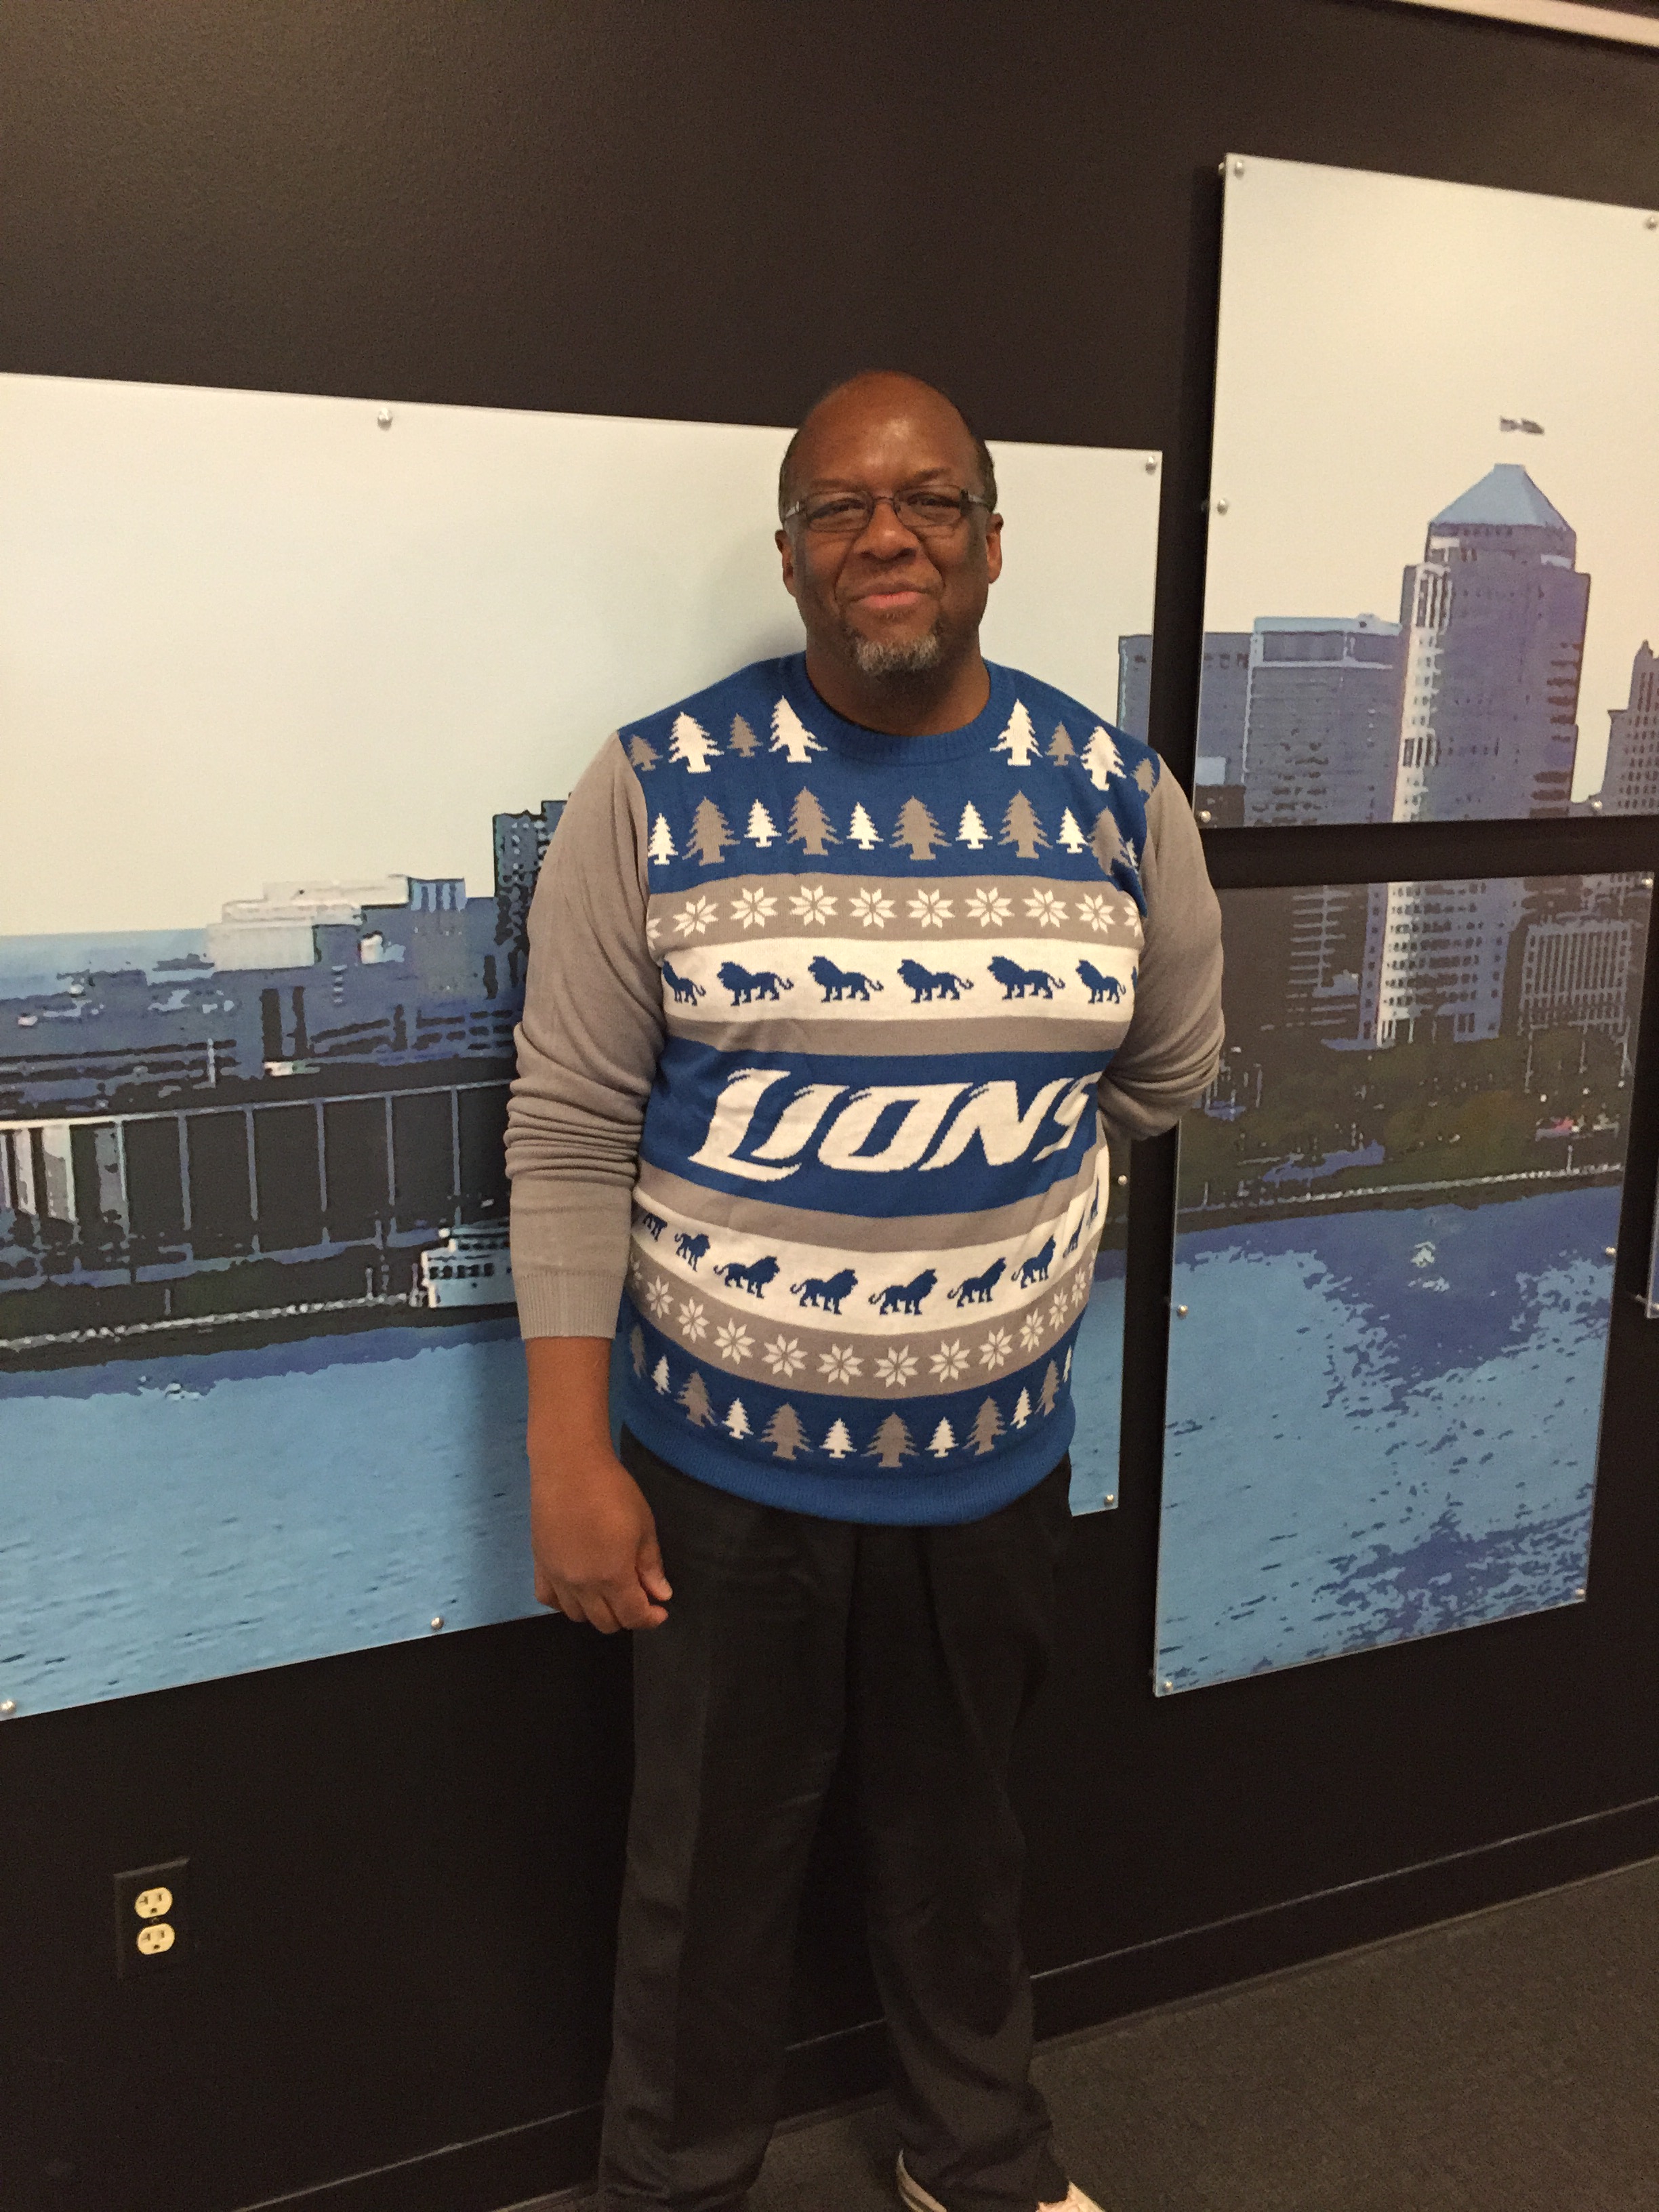 WWJ's Tony Ortiz gave the Lions sweater a go. (credit: Terri Lee/WWJ)